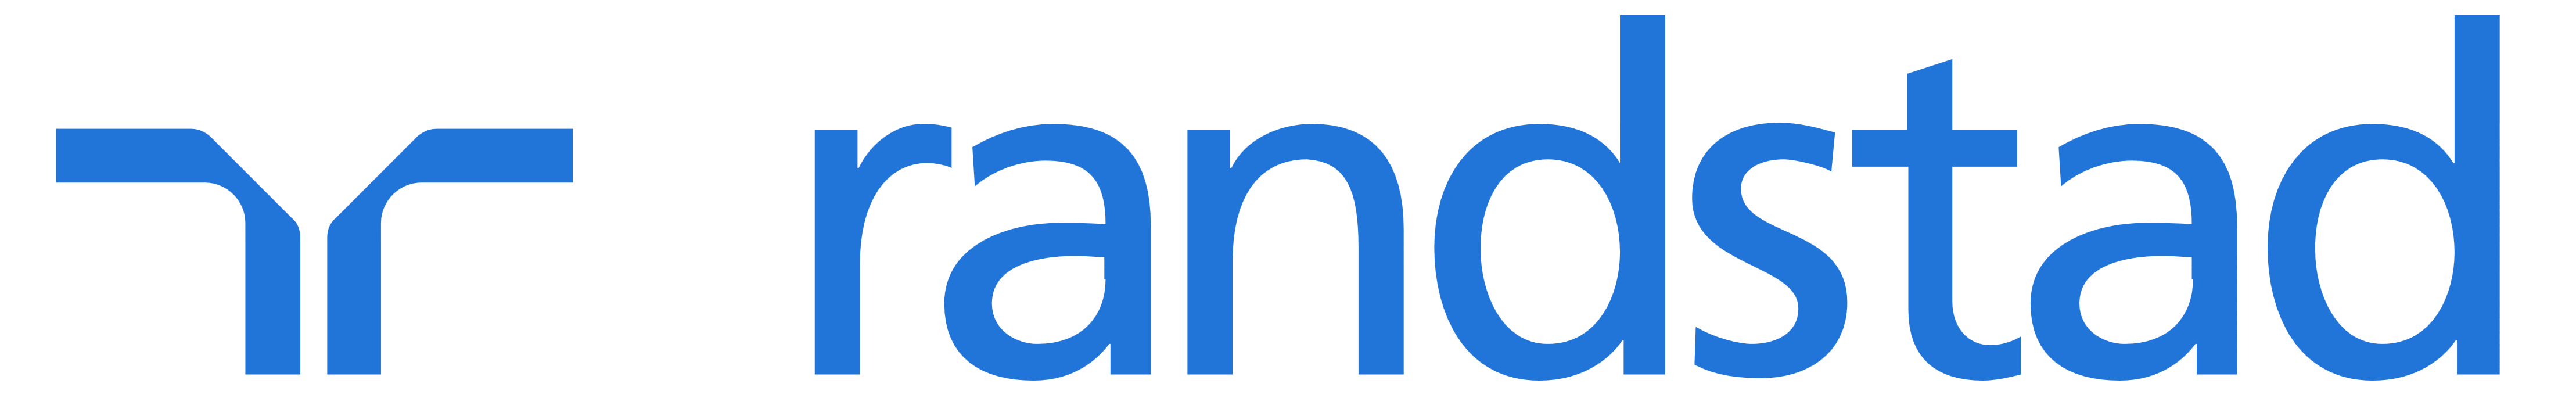 Randstad_logo-2